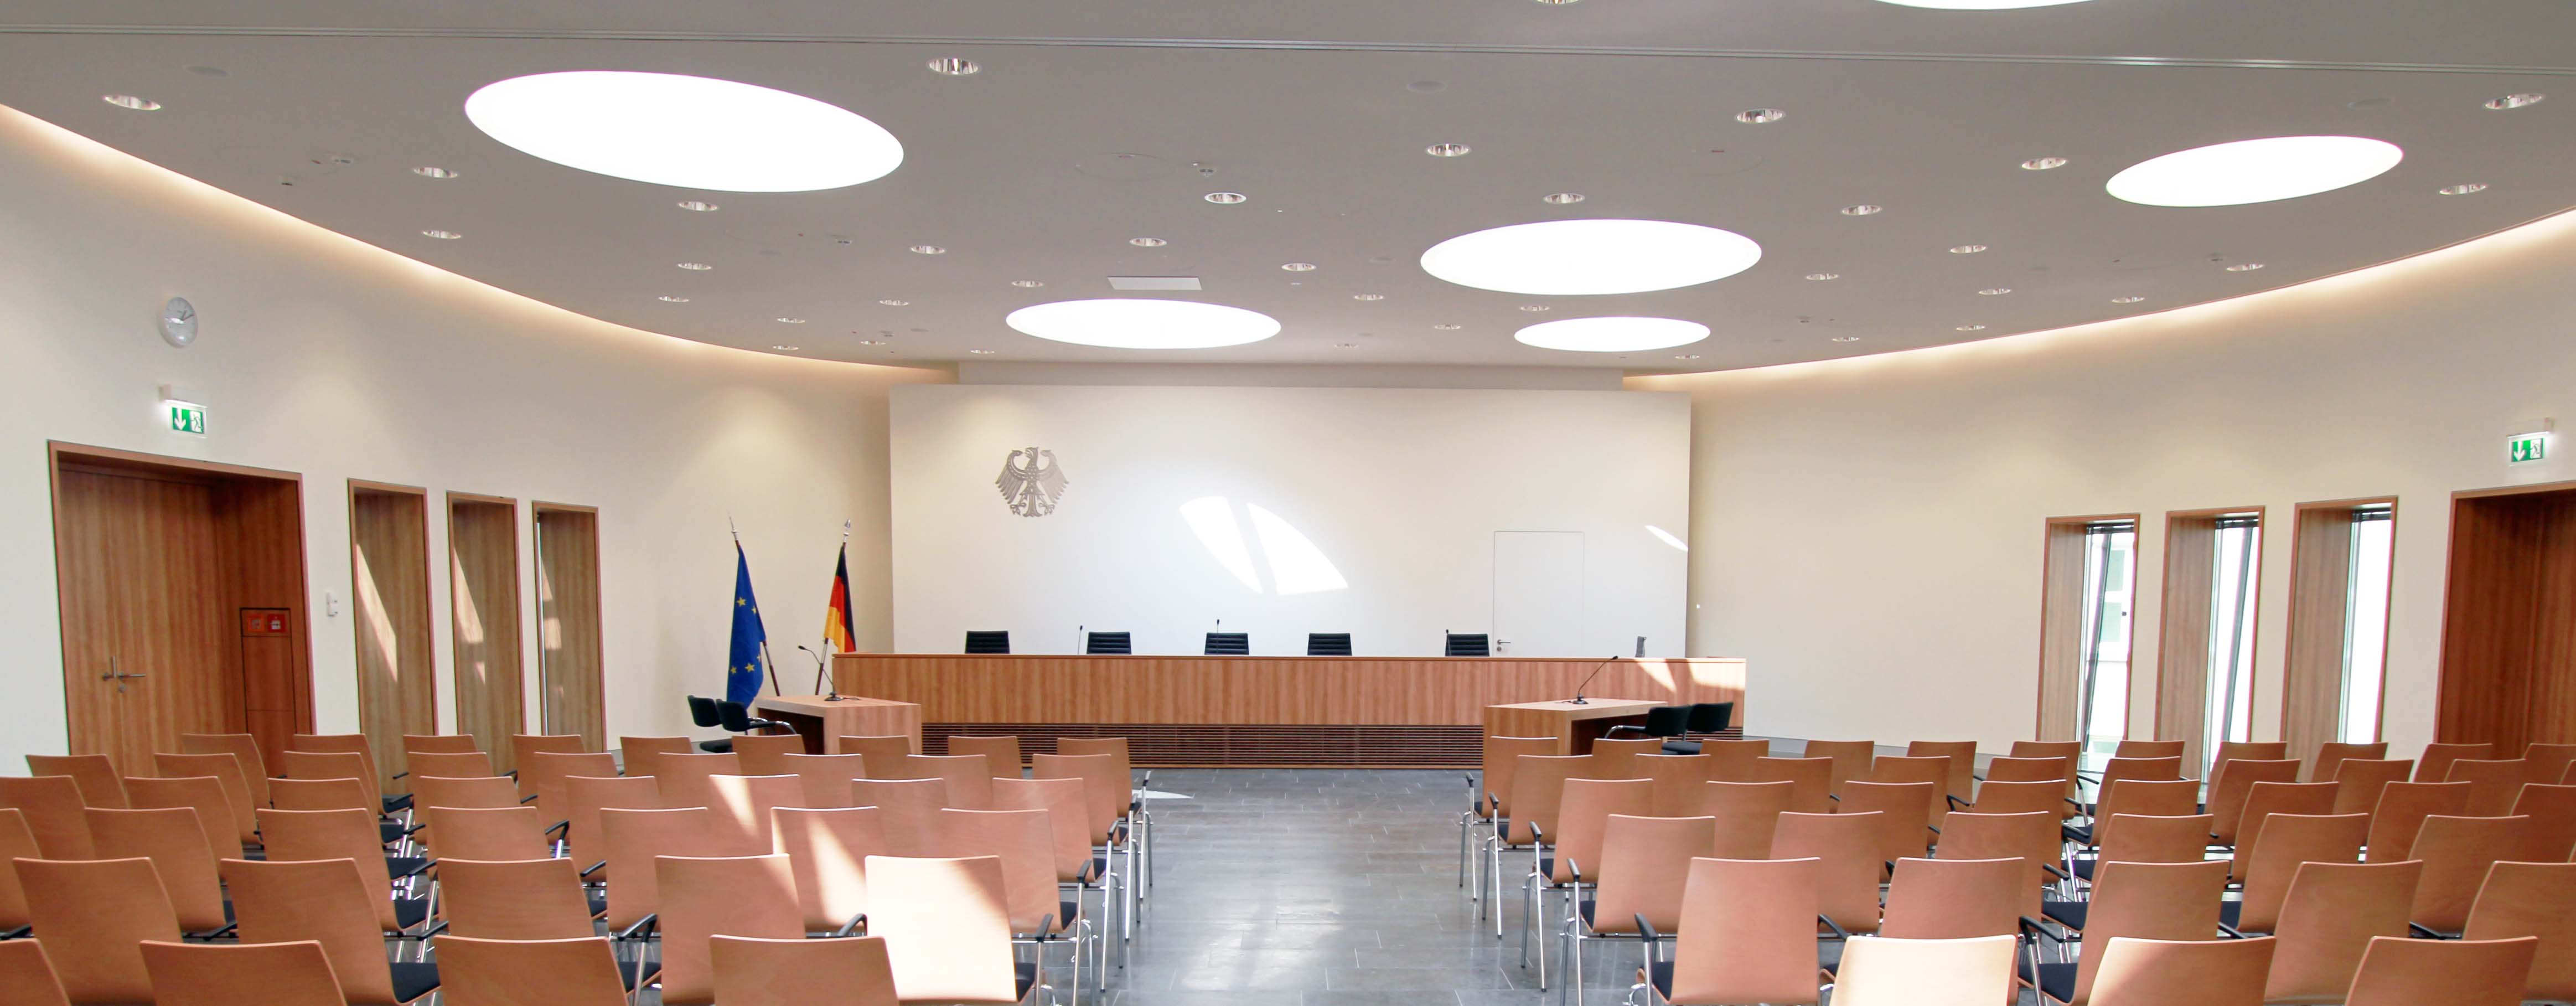 Blick auf die Richterbank im Elisabeth-Selbert-Saal des Bundessozialgerichts (verweist auf: Verhandlungstermine der Senate des Bundessozialgerichts)